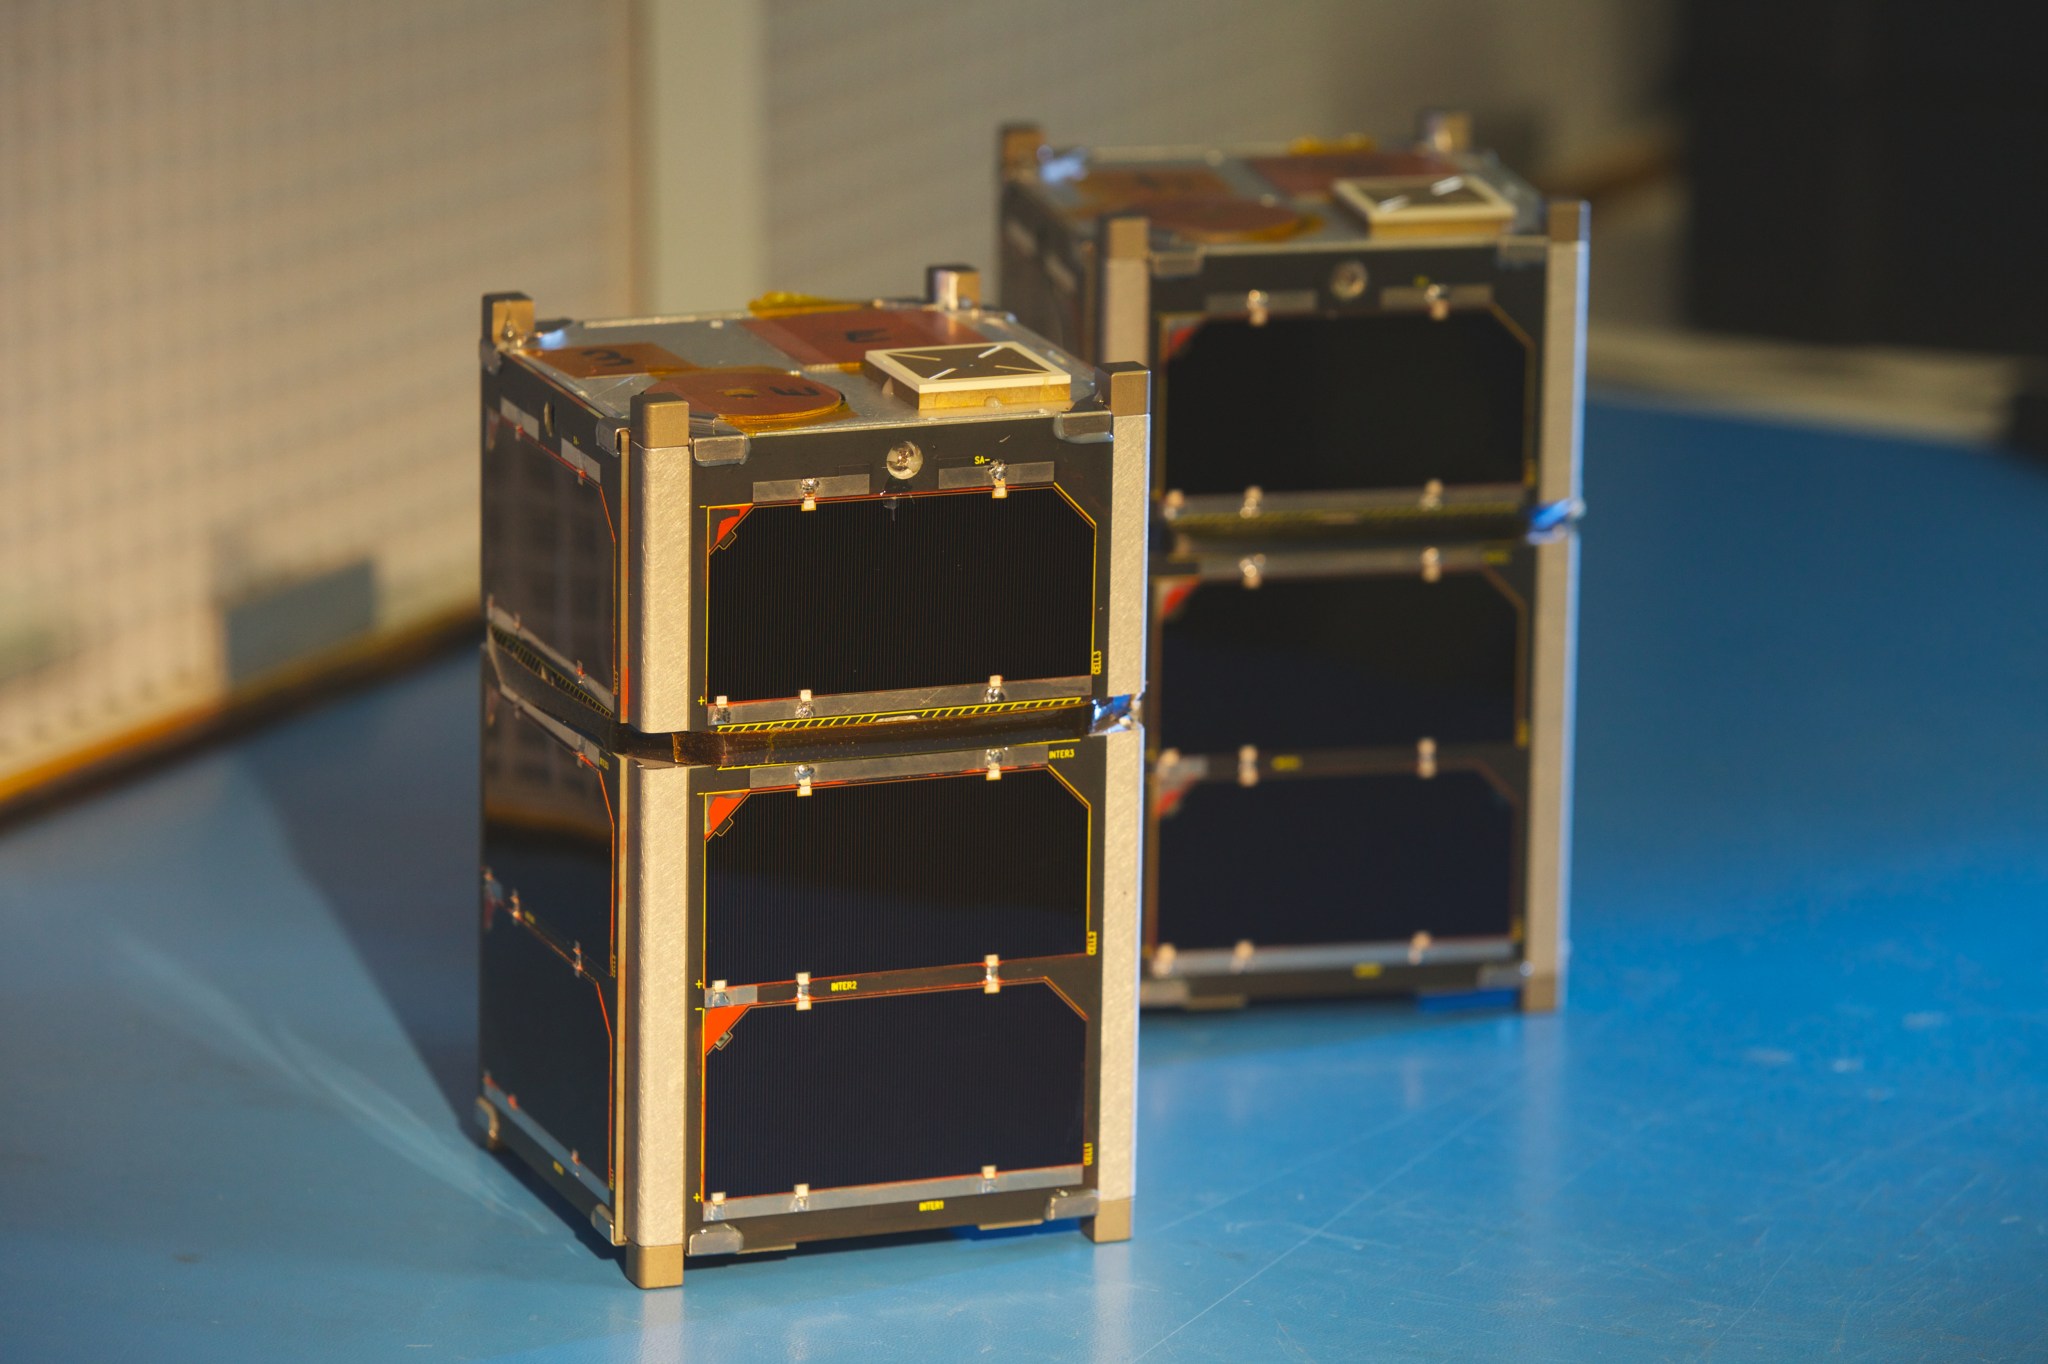 The FIREBIRD-II CubeSat